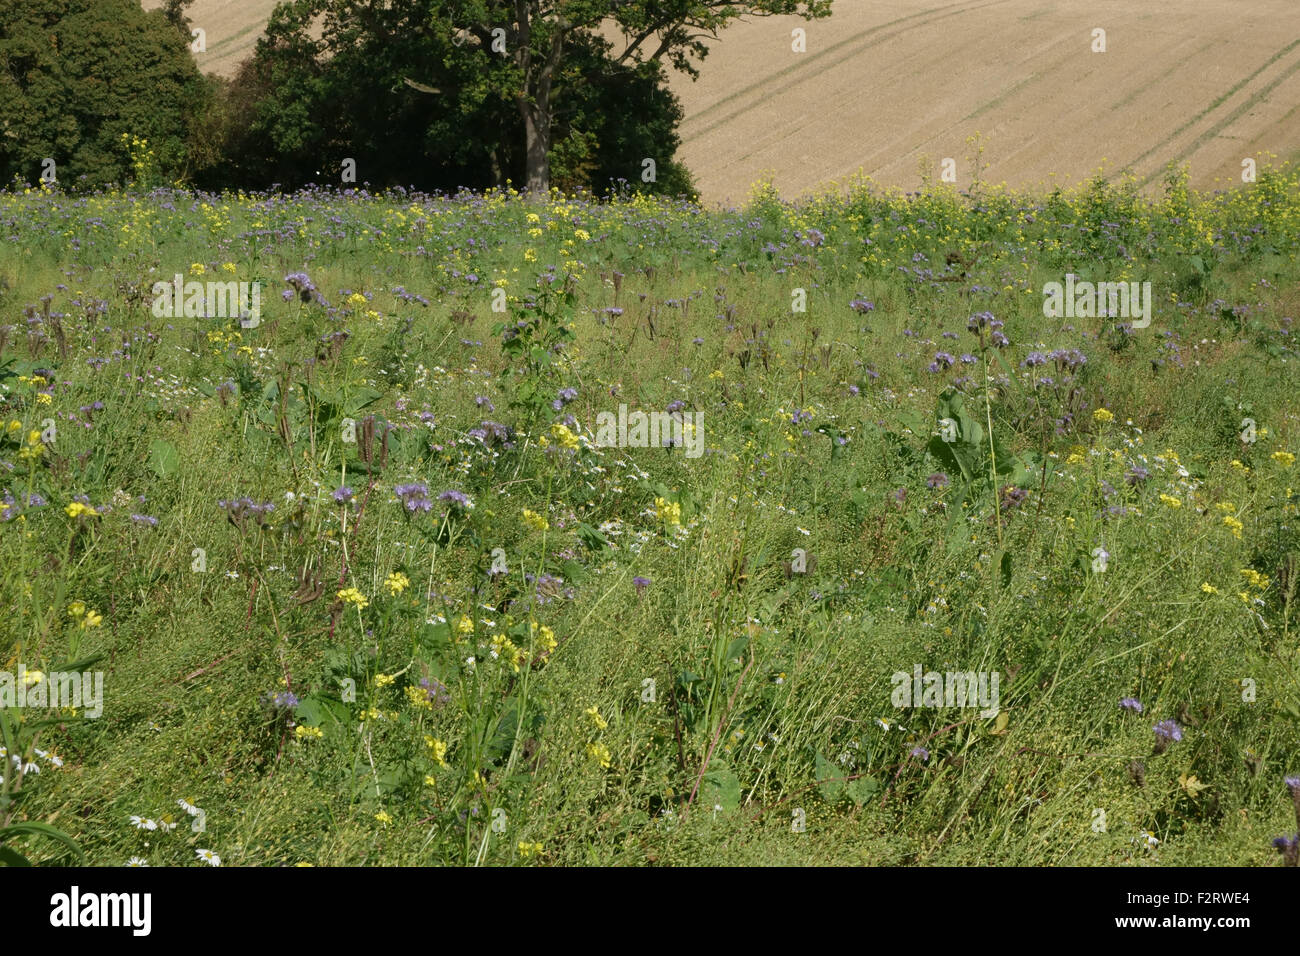 El Wildflower área con plantas con flores para atraer insectos y fauna junto a cultivos agrícolas, Berkshire, Septiembre Foto de stock